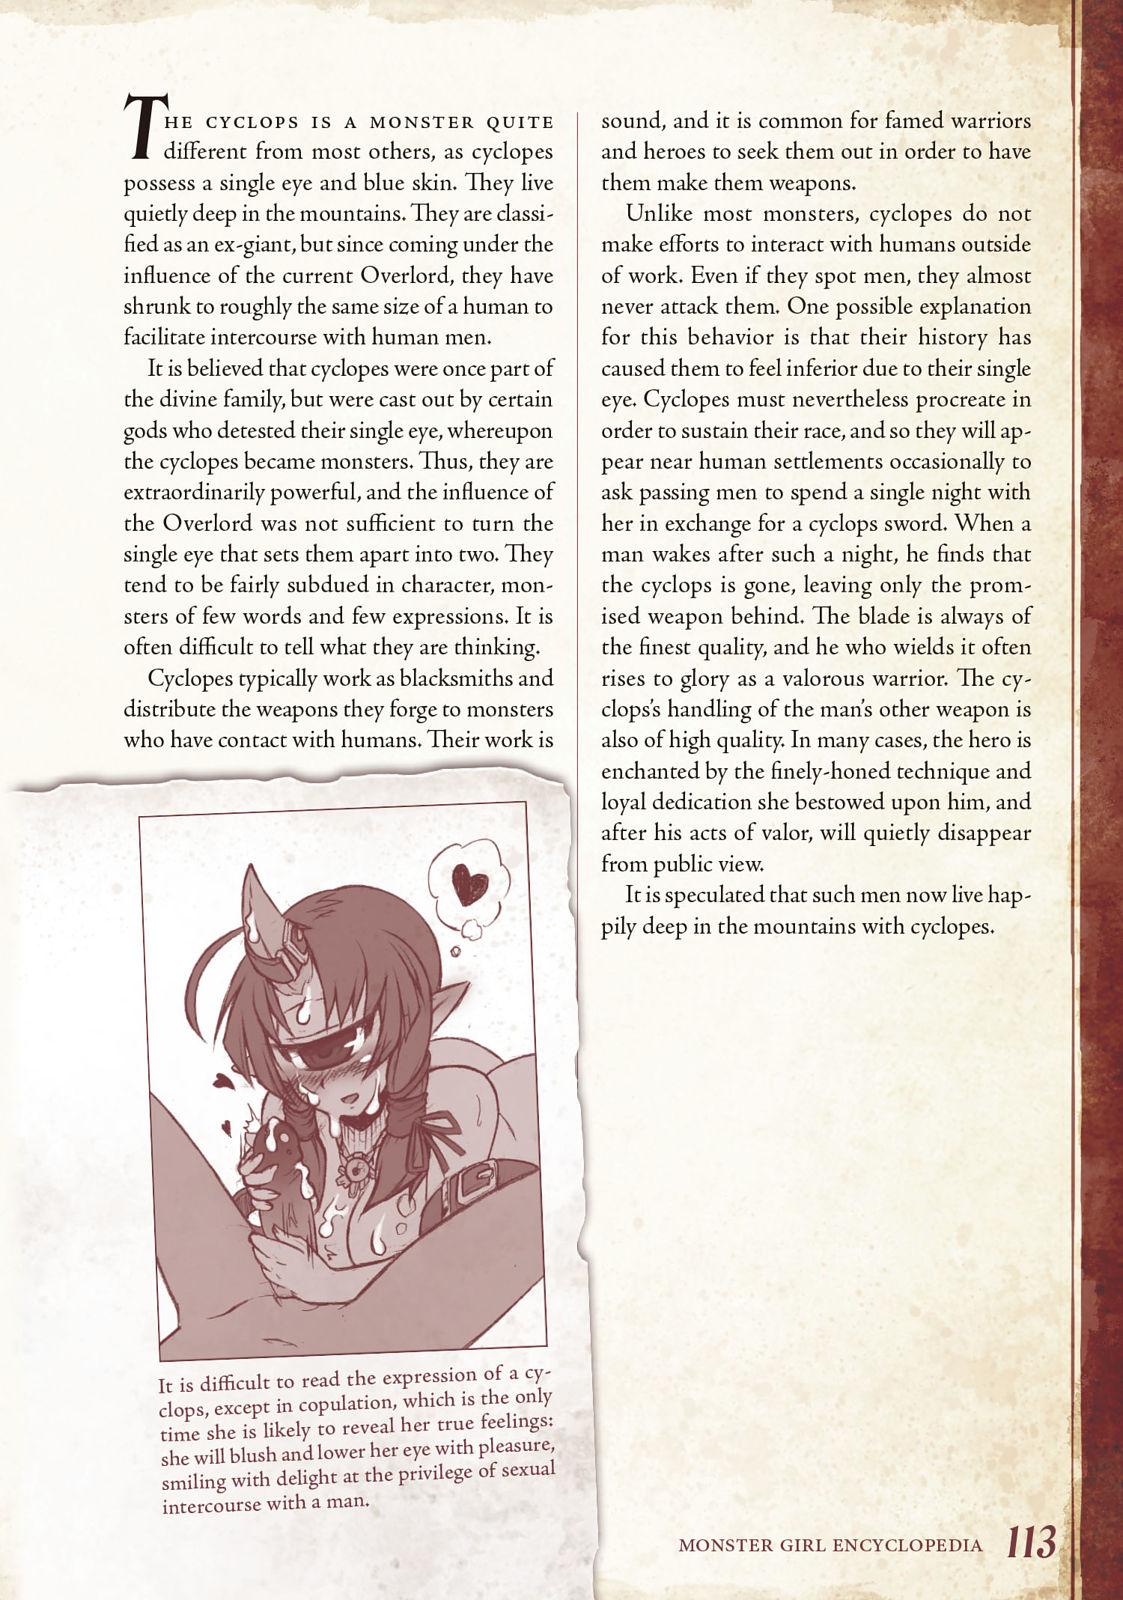 Monster Girl Encyclopedia Vol. 1 113